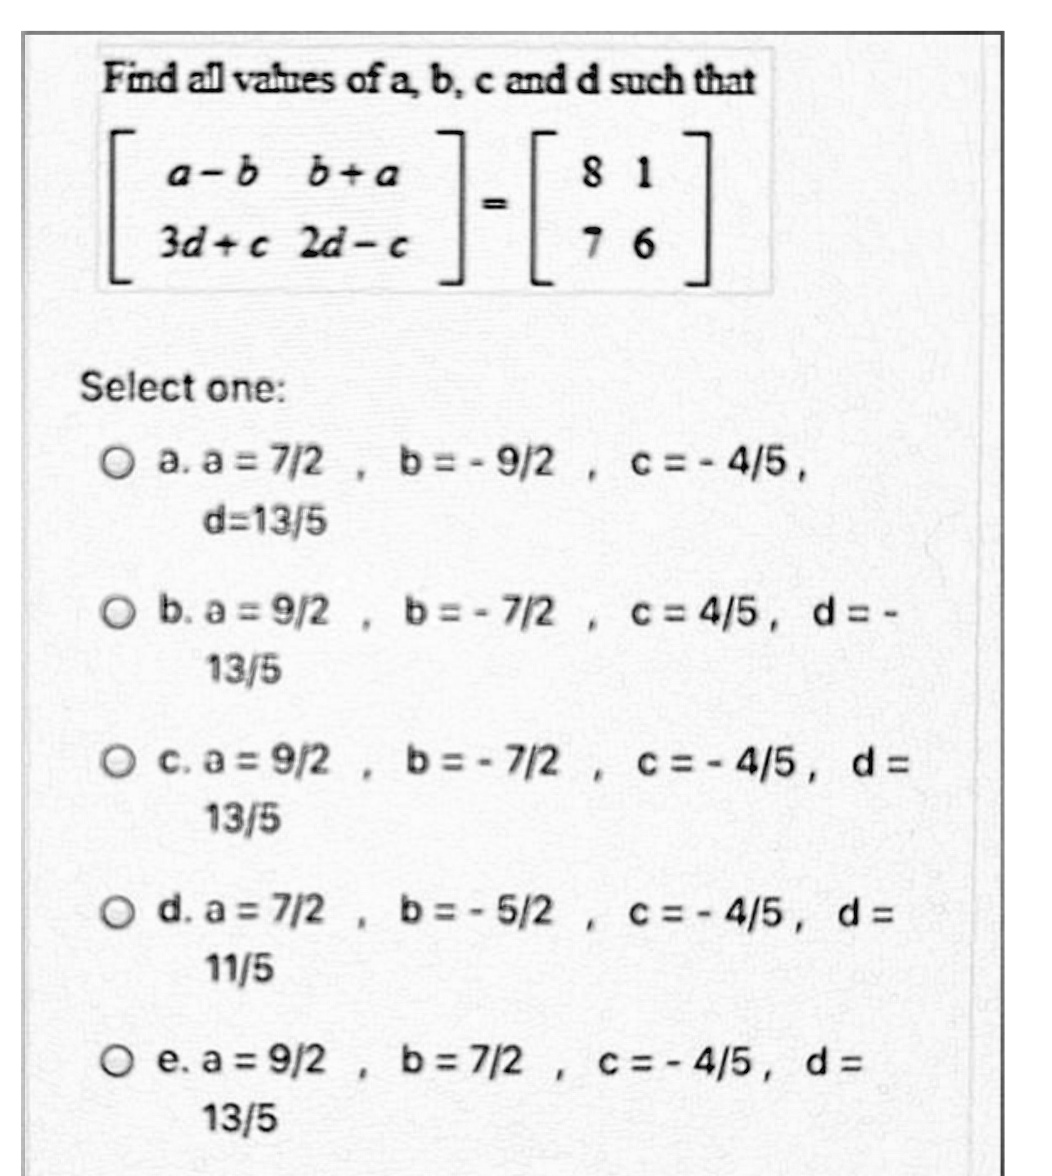 Find all vahnes of a b, c and d such that
[:
]-[::]
a-b b+ a
8 1
3d+c 2d- c
7 6
Select one:
O a. a = 7/2, b= - 9/2, c=- 4/5,
d=13/5
O b. a 9/2 , b=- 7/2 , c= 4/5, d= -
13/5
O c.a = 9/2, b=- 7/2 , c= - 4/5, d=
13/5
O d. a = 7/2, b=-5/2, c= - 4/5, d =
11/5
O e. a = 9/2 , b=7/2 , c= - 4/5, d =
13/5
